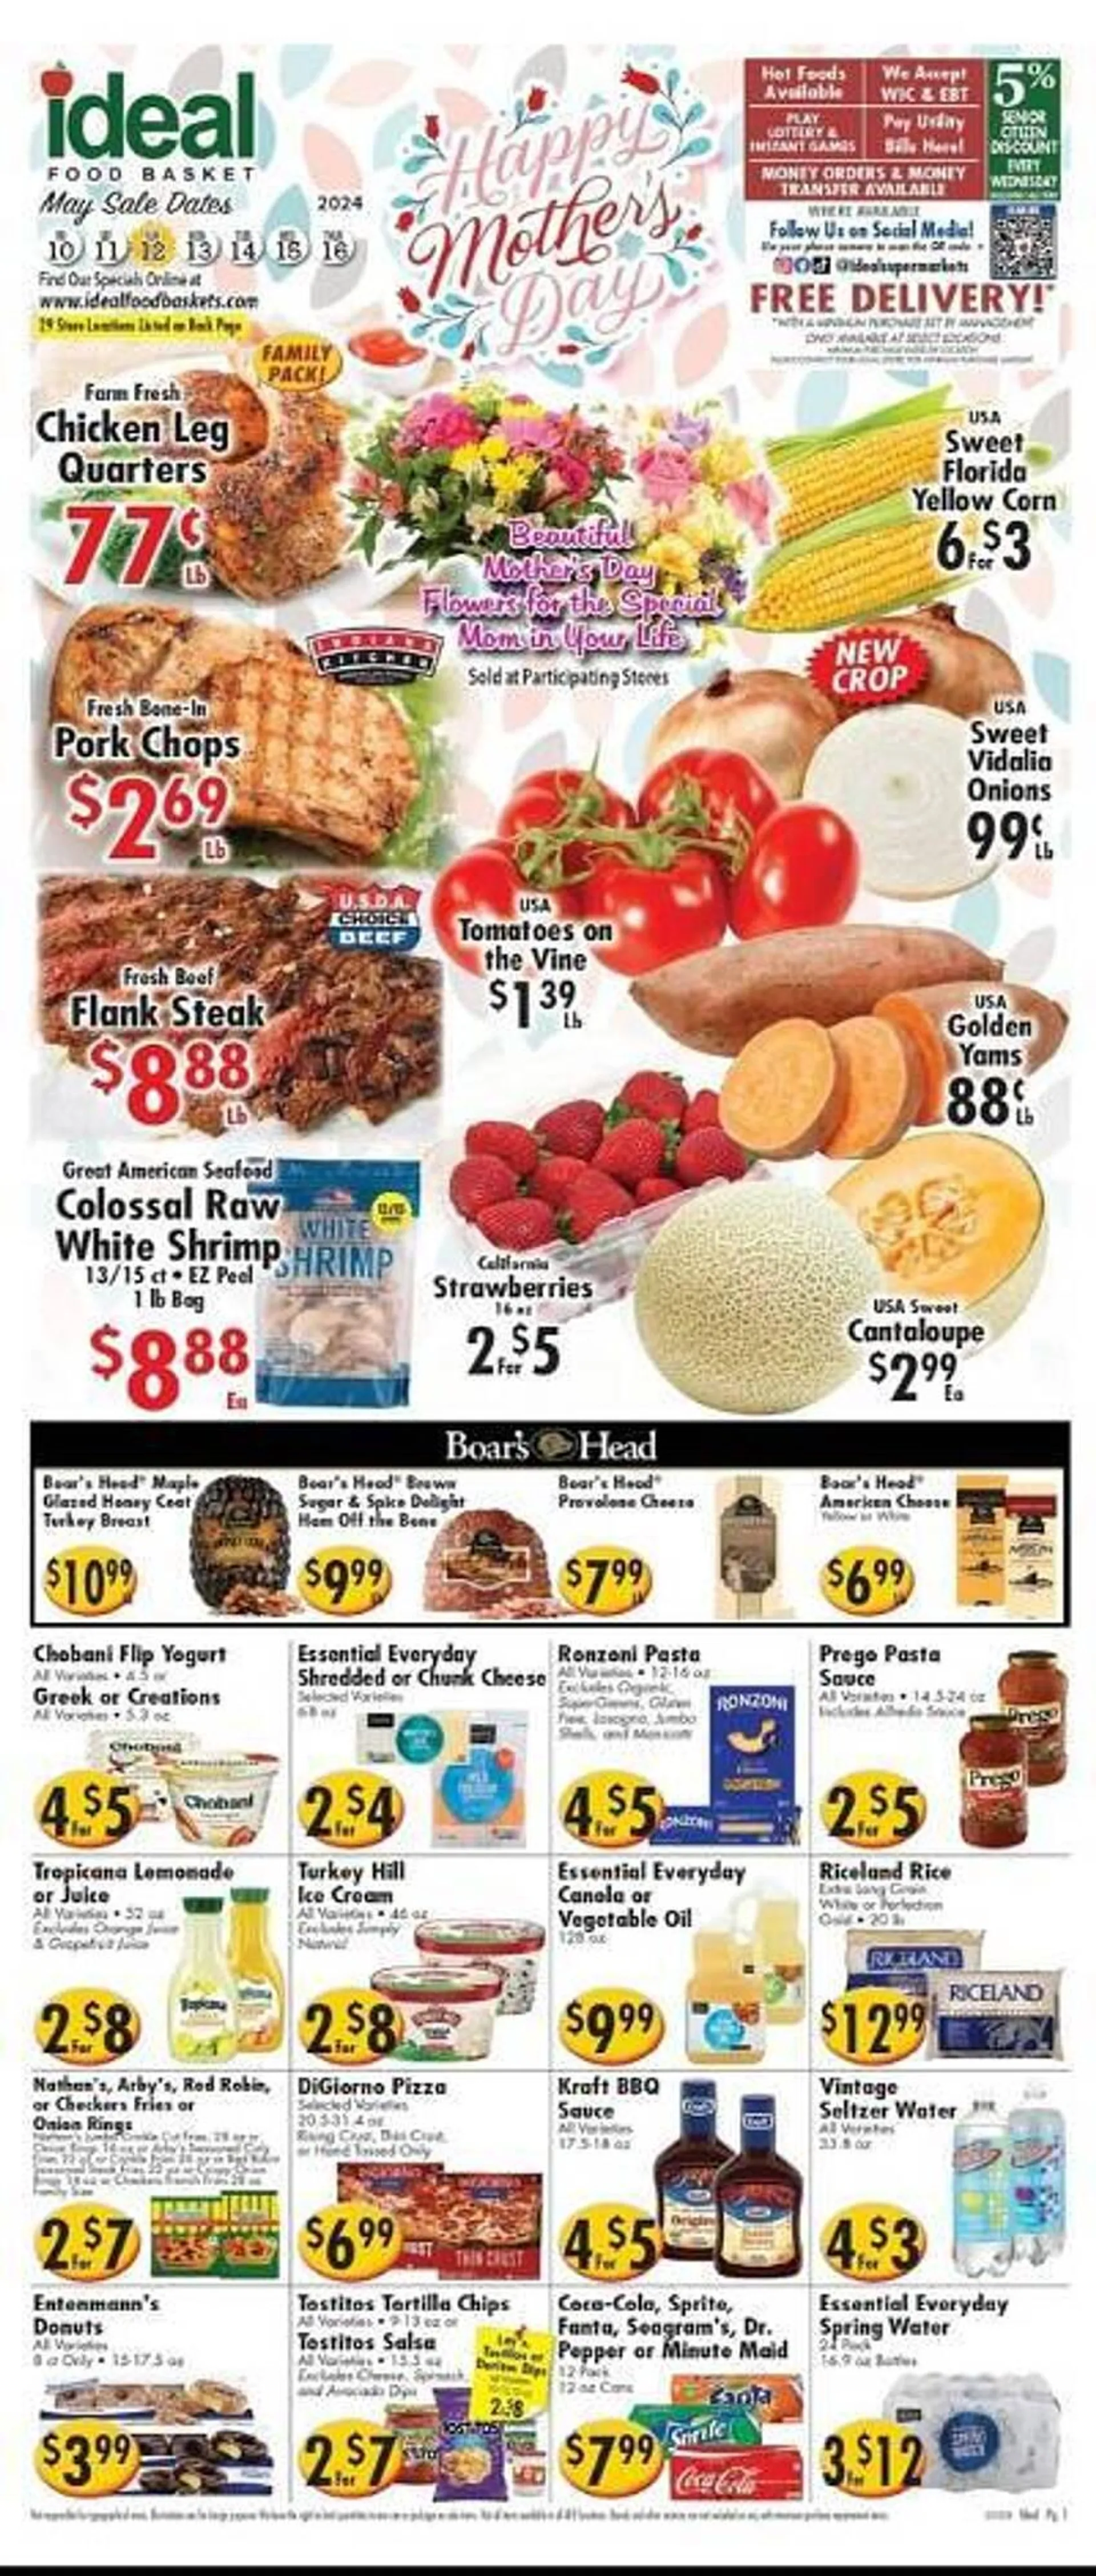 Ideal Food Basket Weekly Ad - 1